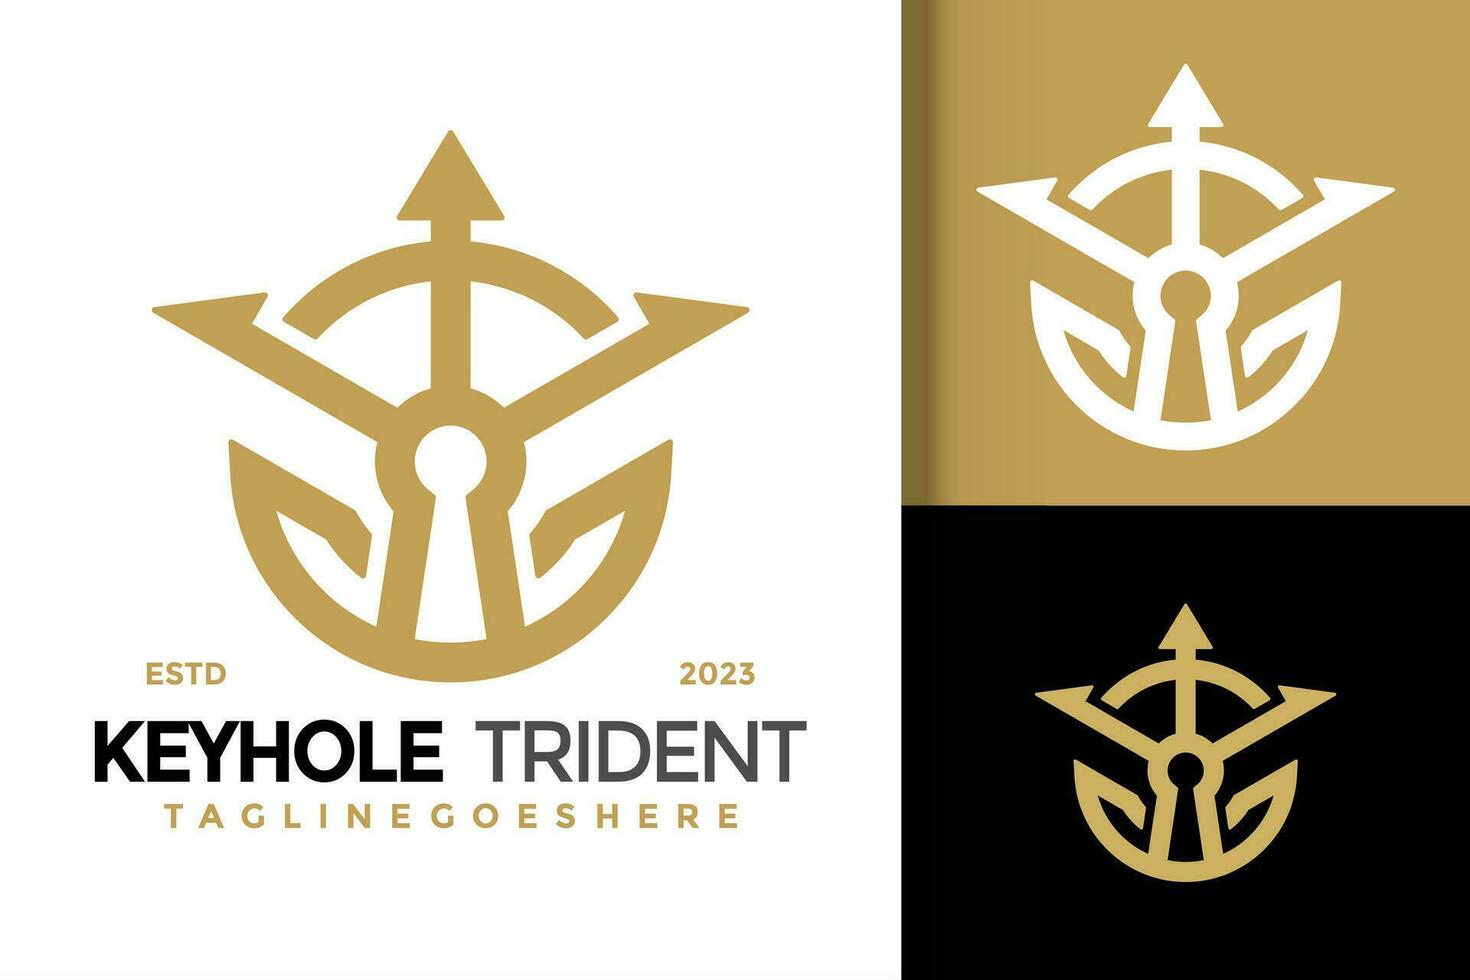 Keyhole trident neptune logo vector icon illustration